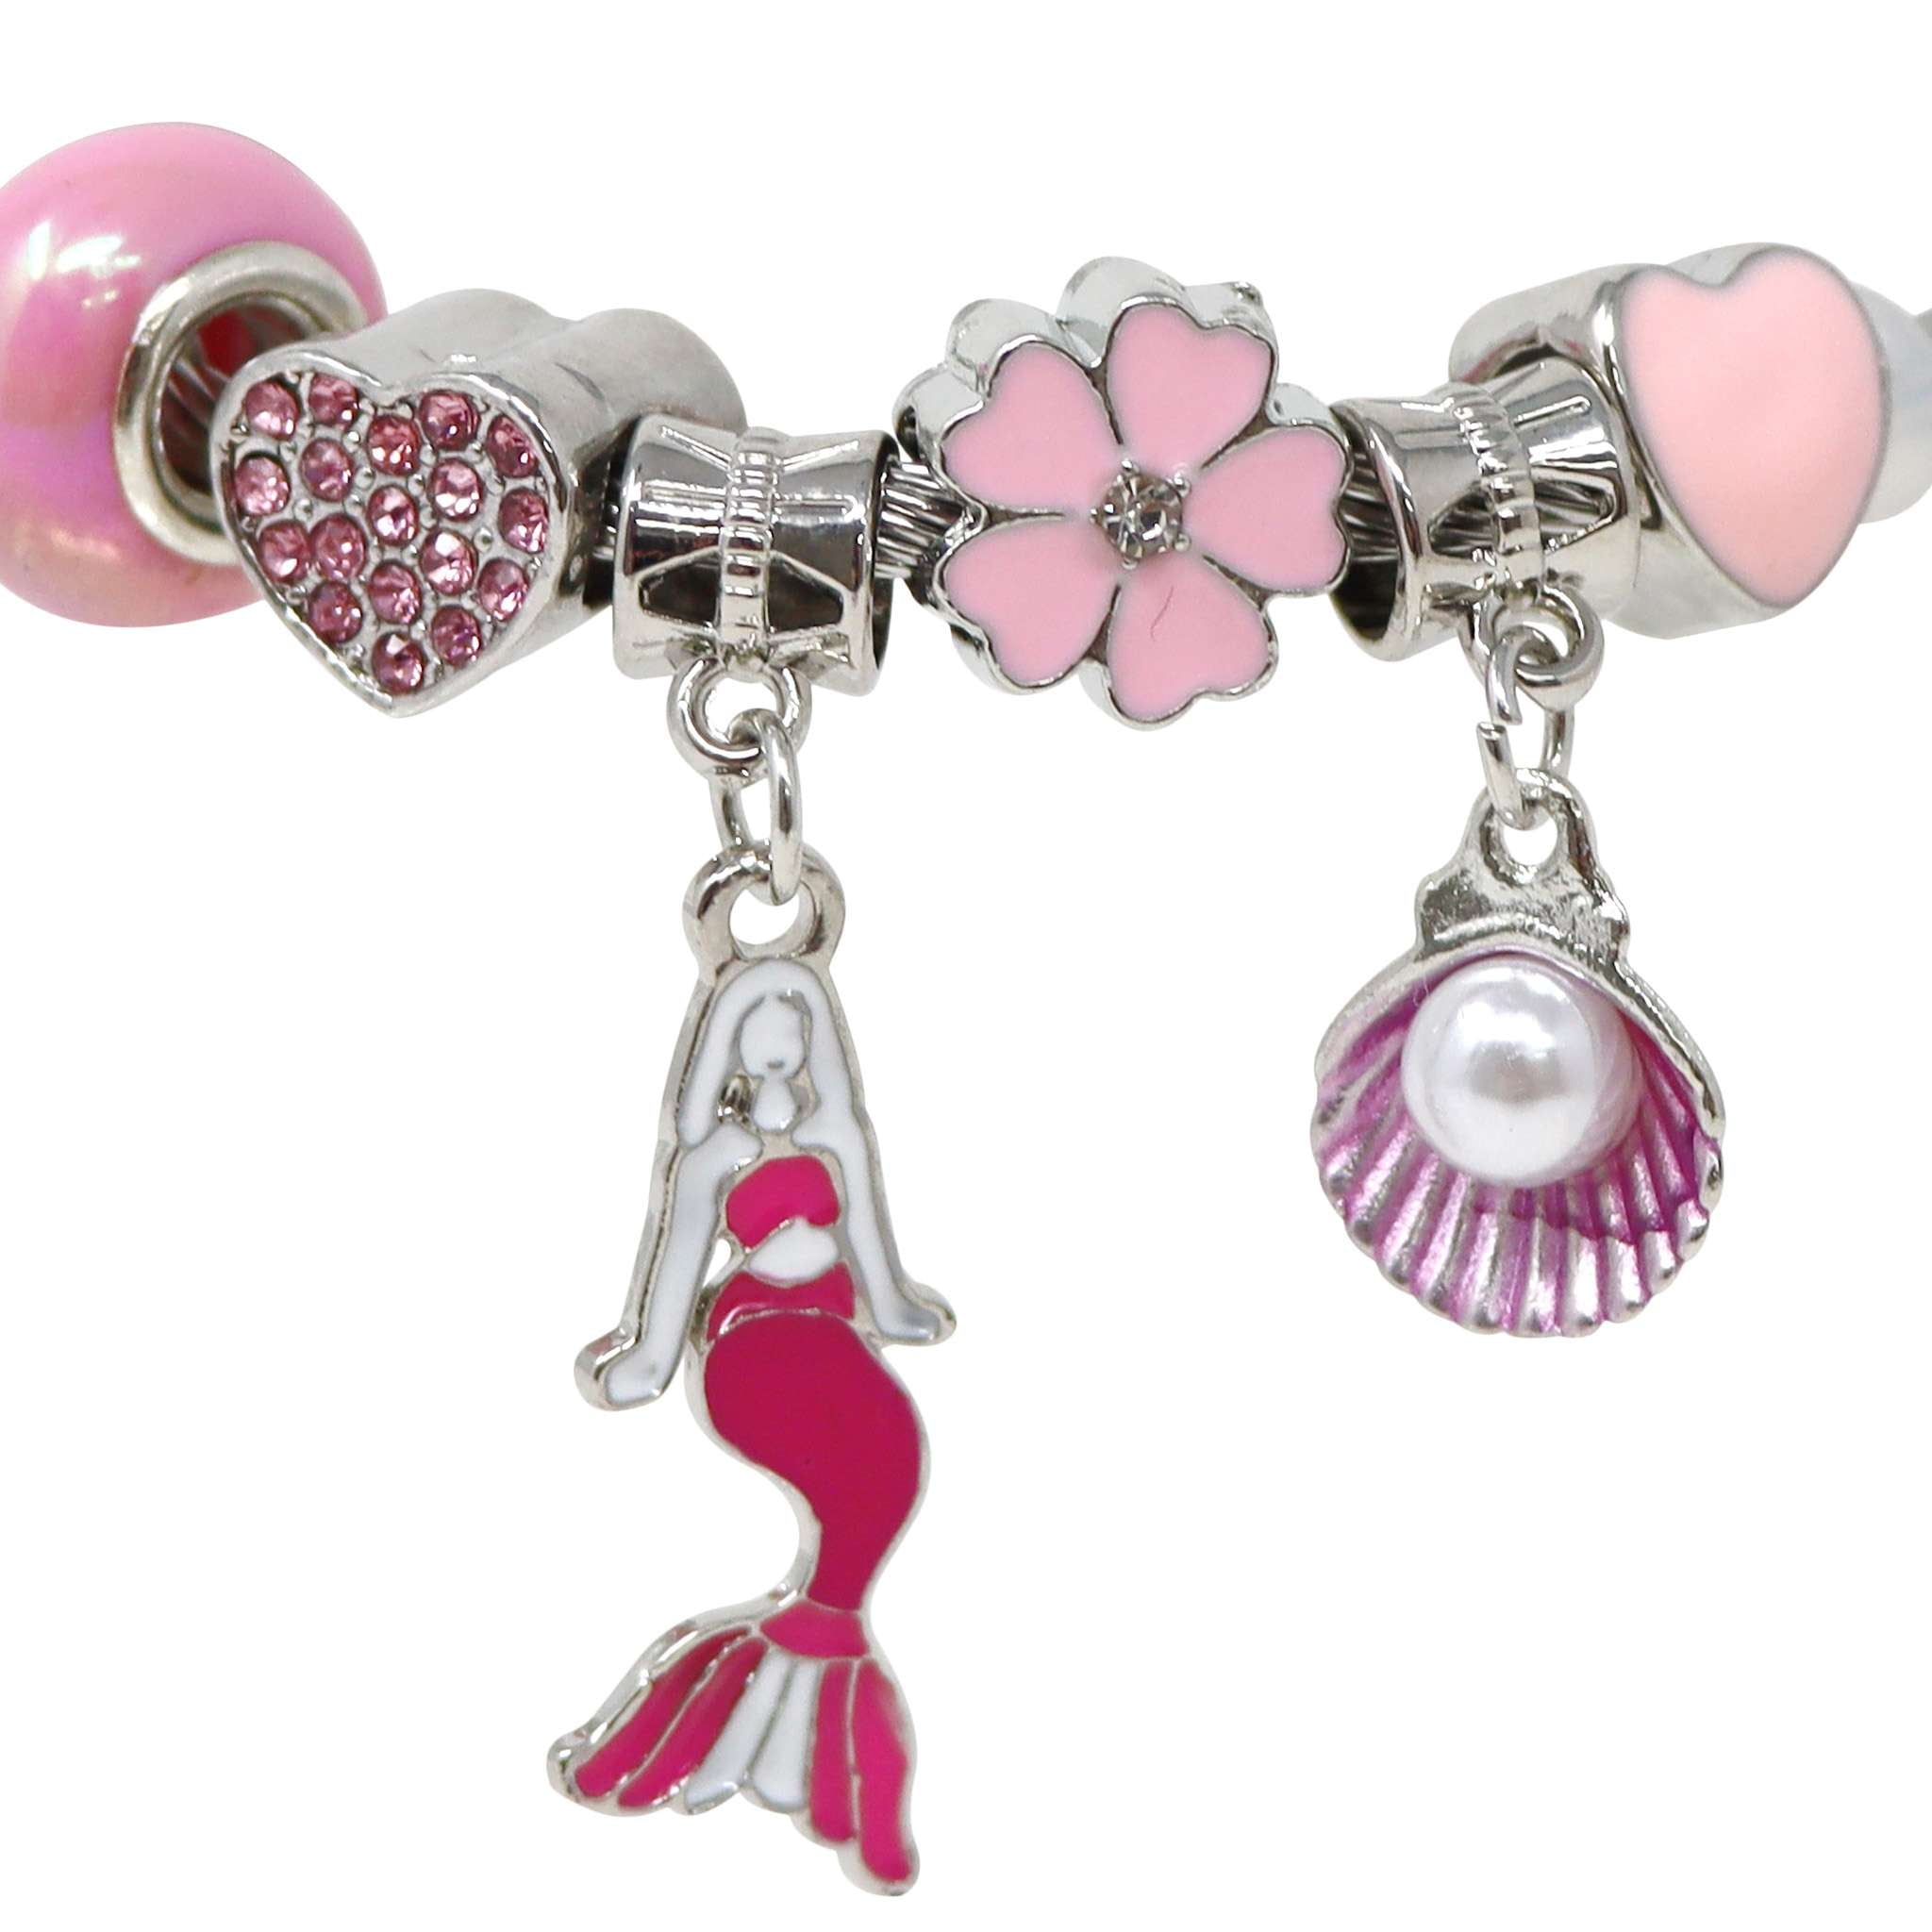 Mermaid Charm Bracelet – Pink Poppy